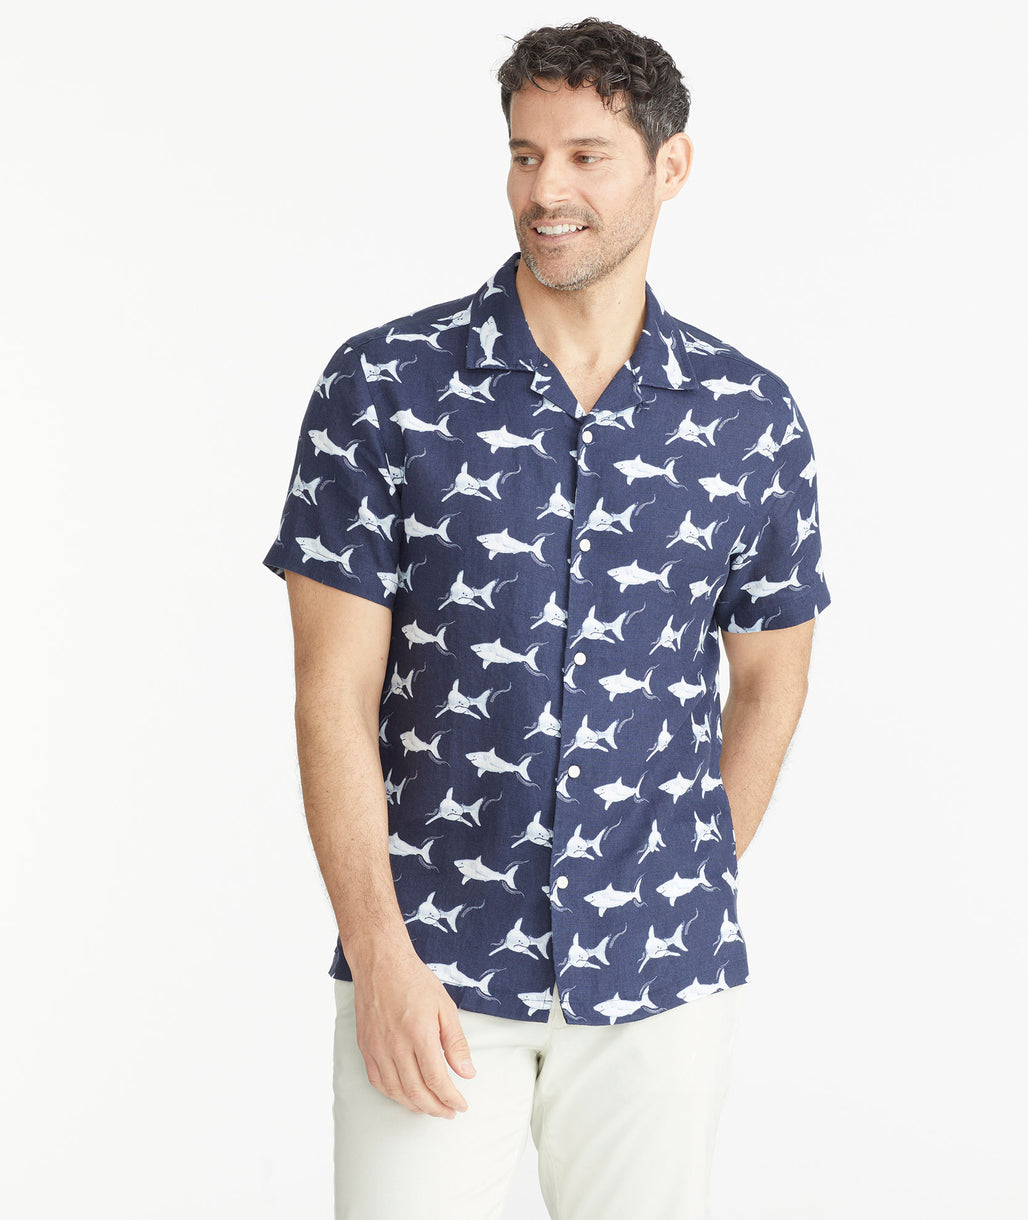 Model is wearing a David Hart x UNTUCKit Shark Print Linen Short-Sleeve Shirt.